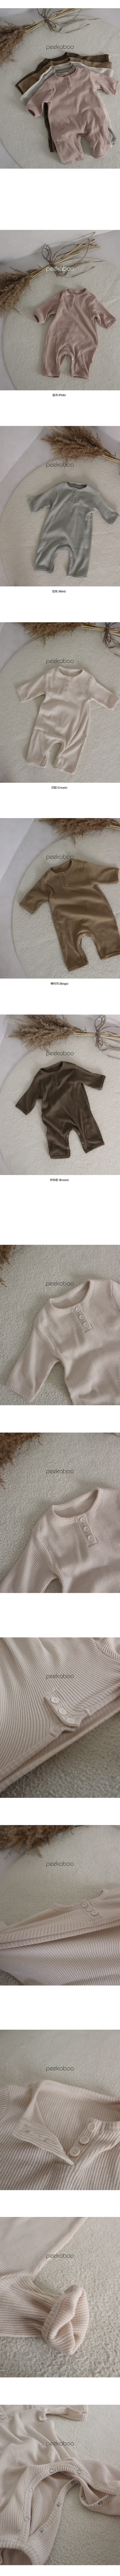 Peekaboo - Korean Baby Fashion - #babygirlfashion - Warm Bodysuit - 4